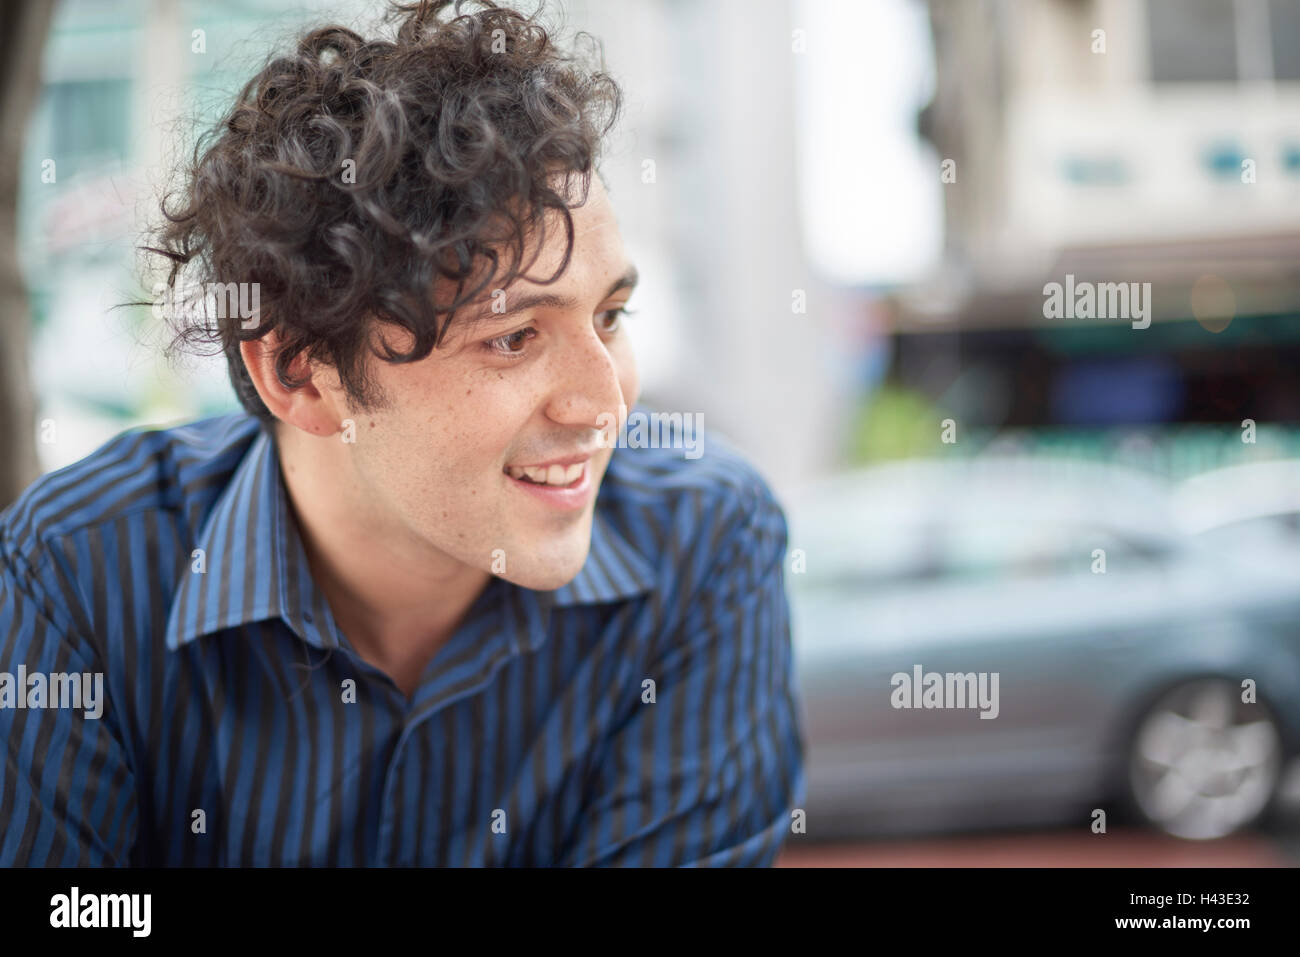 Lächelnder Hispanic Mann mit lockigem Haar Stockfoto